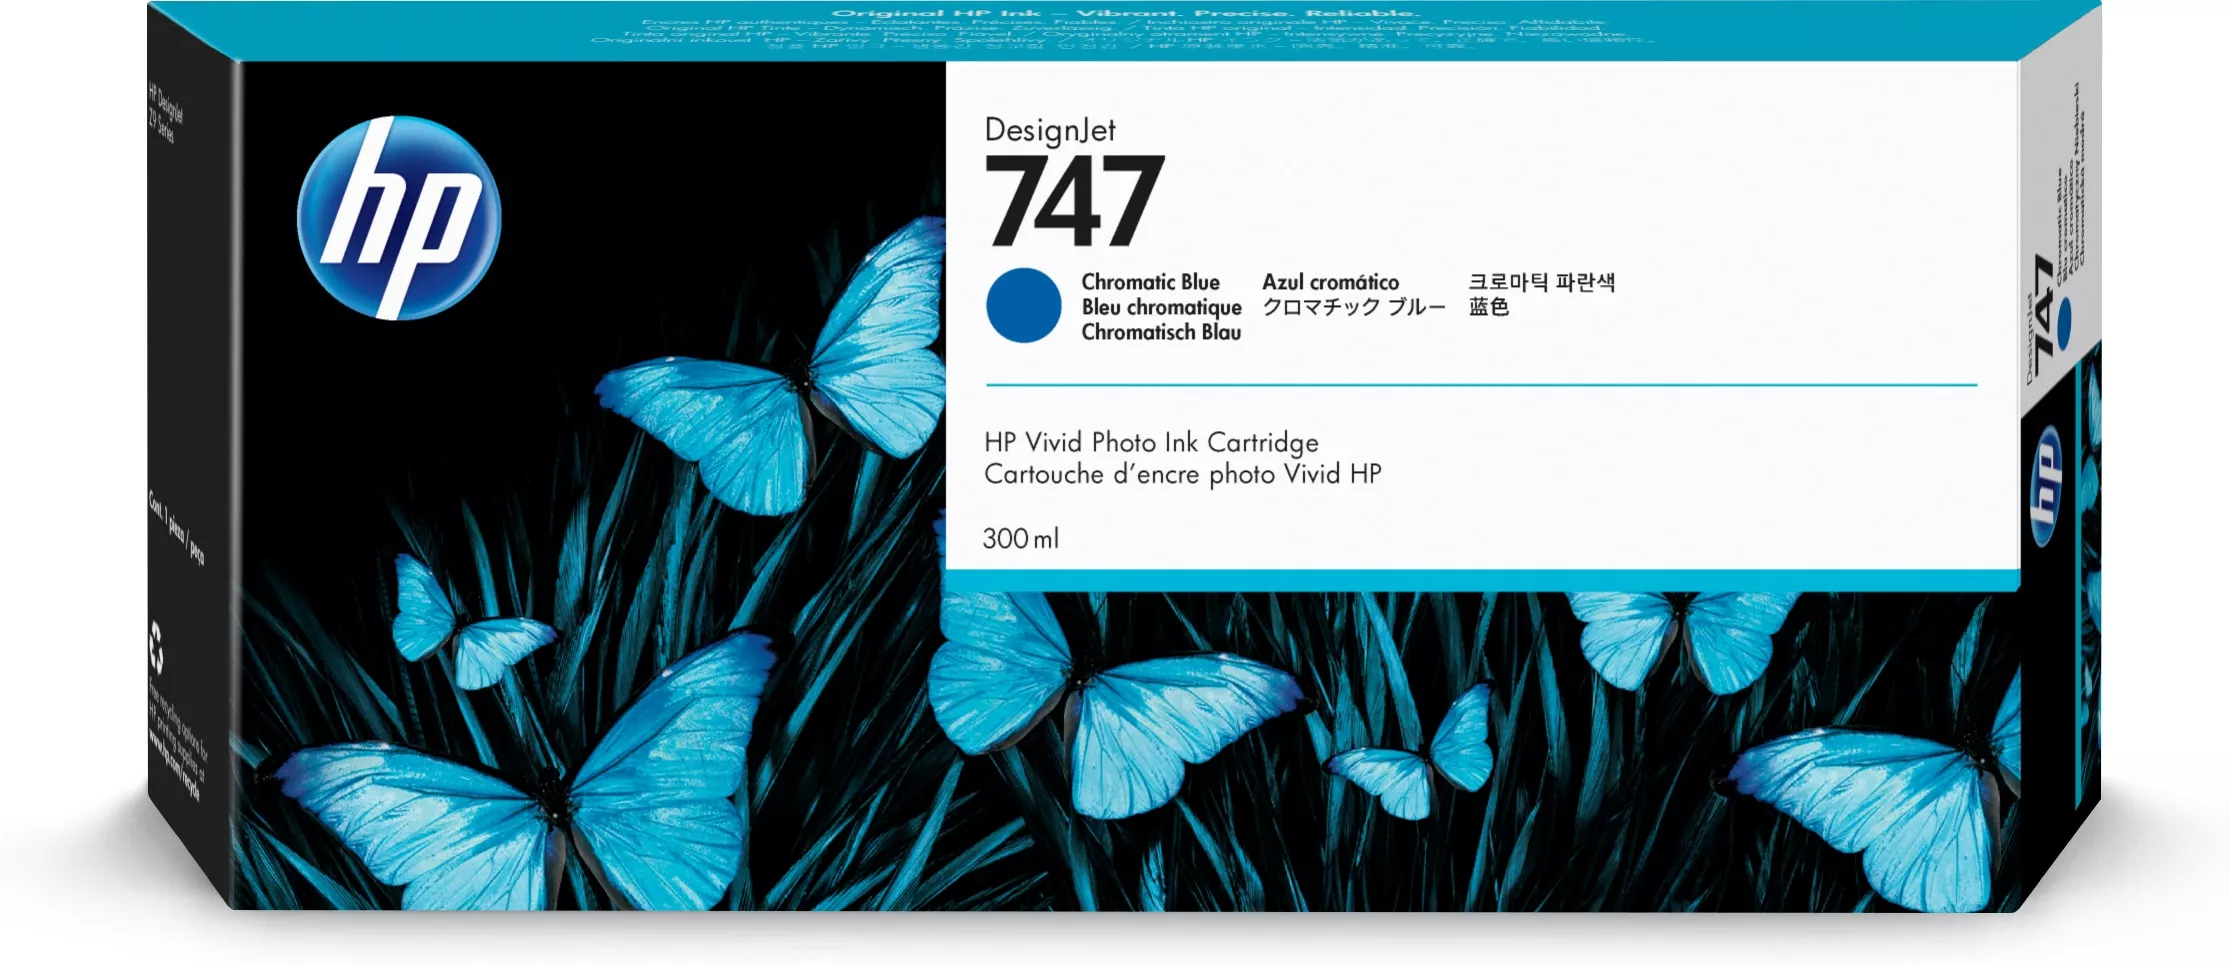 Achat HP 747 300-ml Chromatic Blue Ink Cartridge au meilleur prix